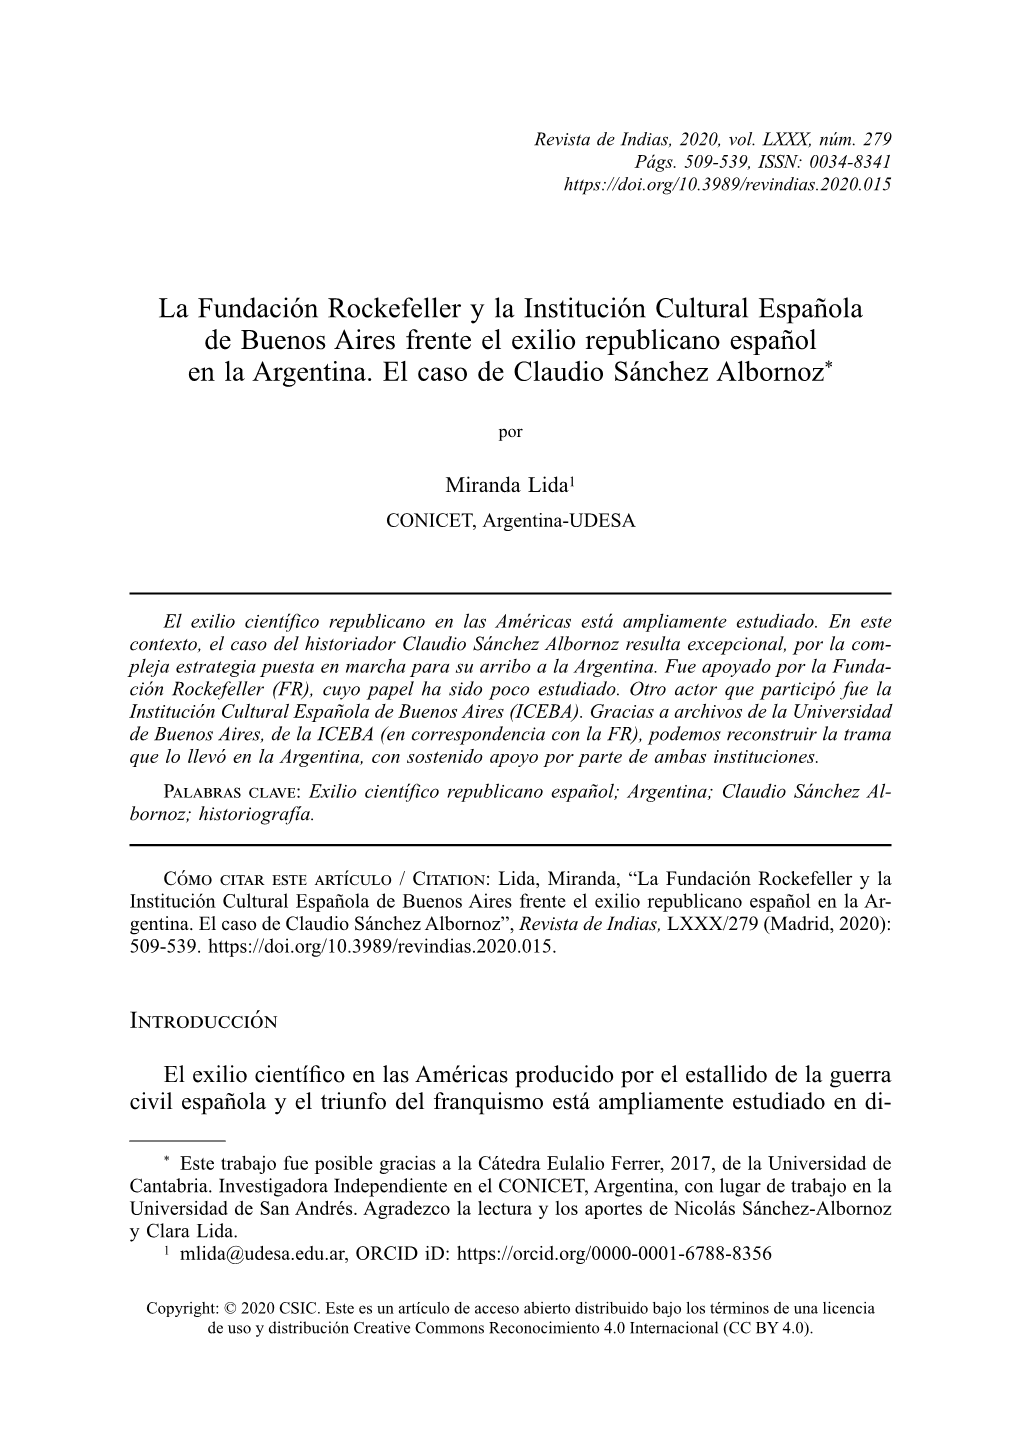 La Fundación Rockefeller Y La Institución Cultural Española De Buenos Aires Frente El Exilio Republicano Español En La Argentina